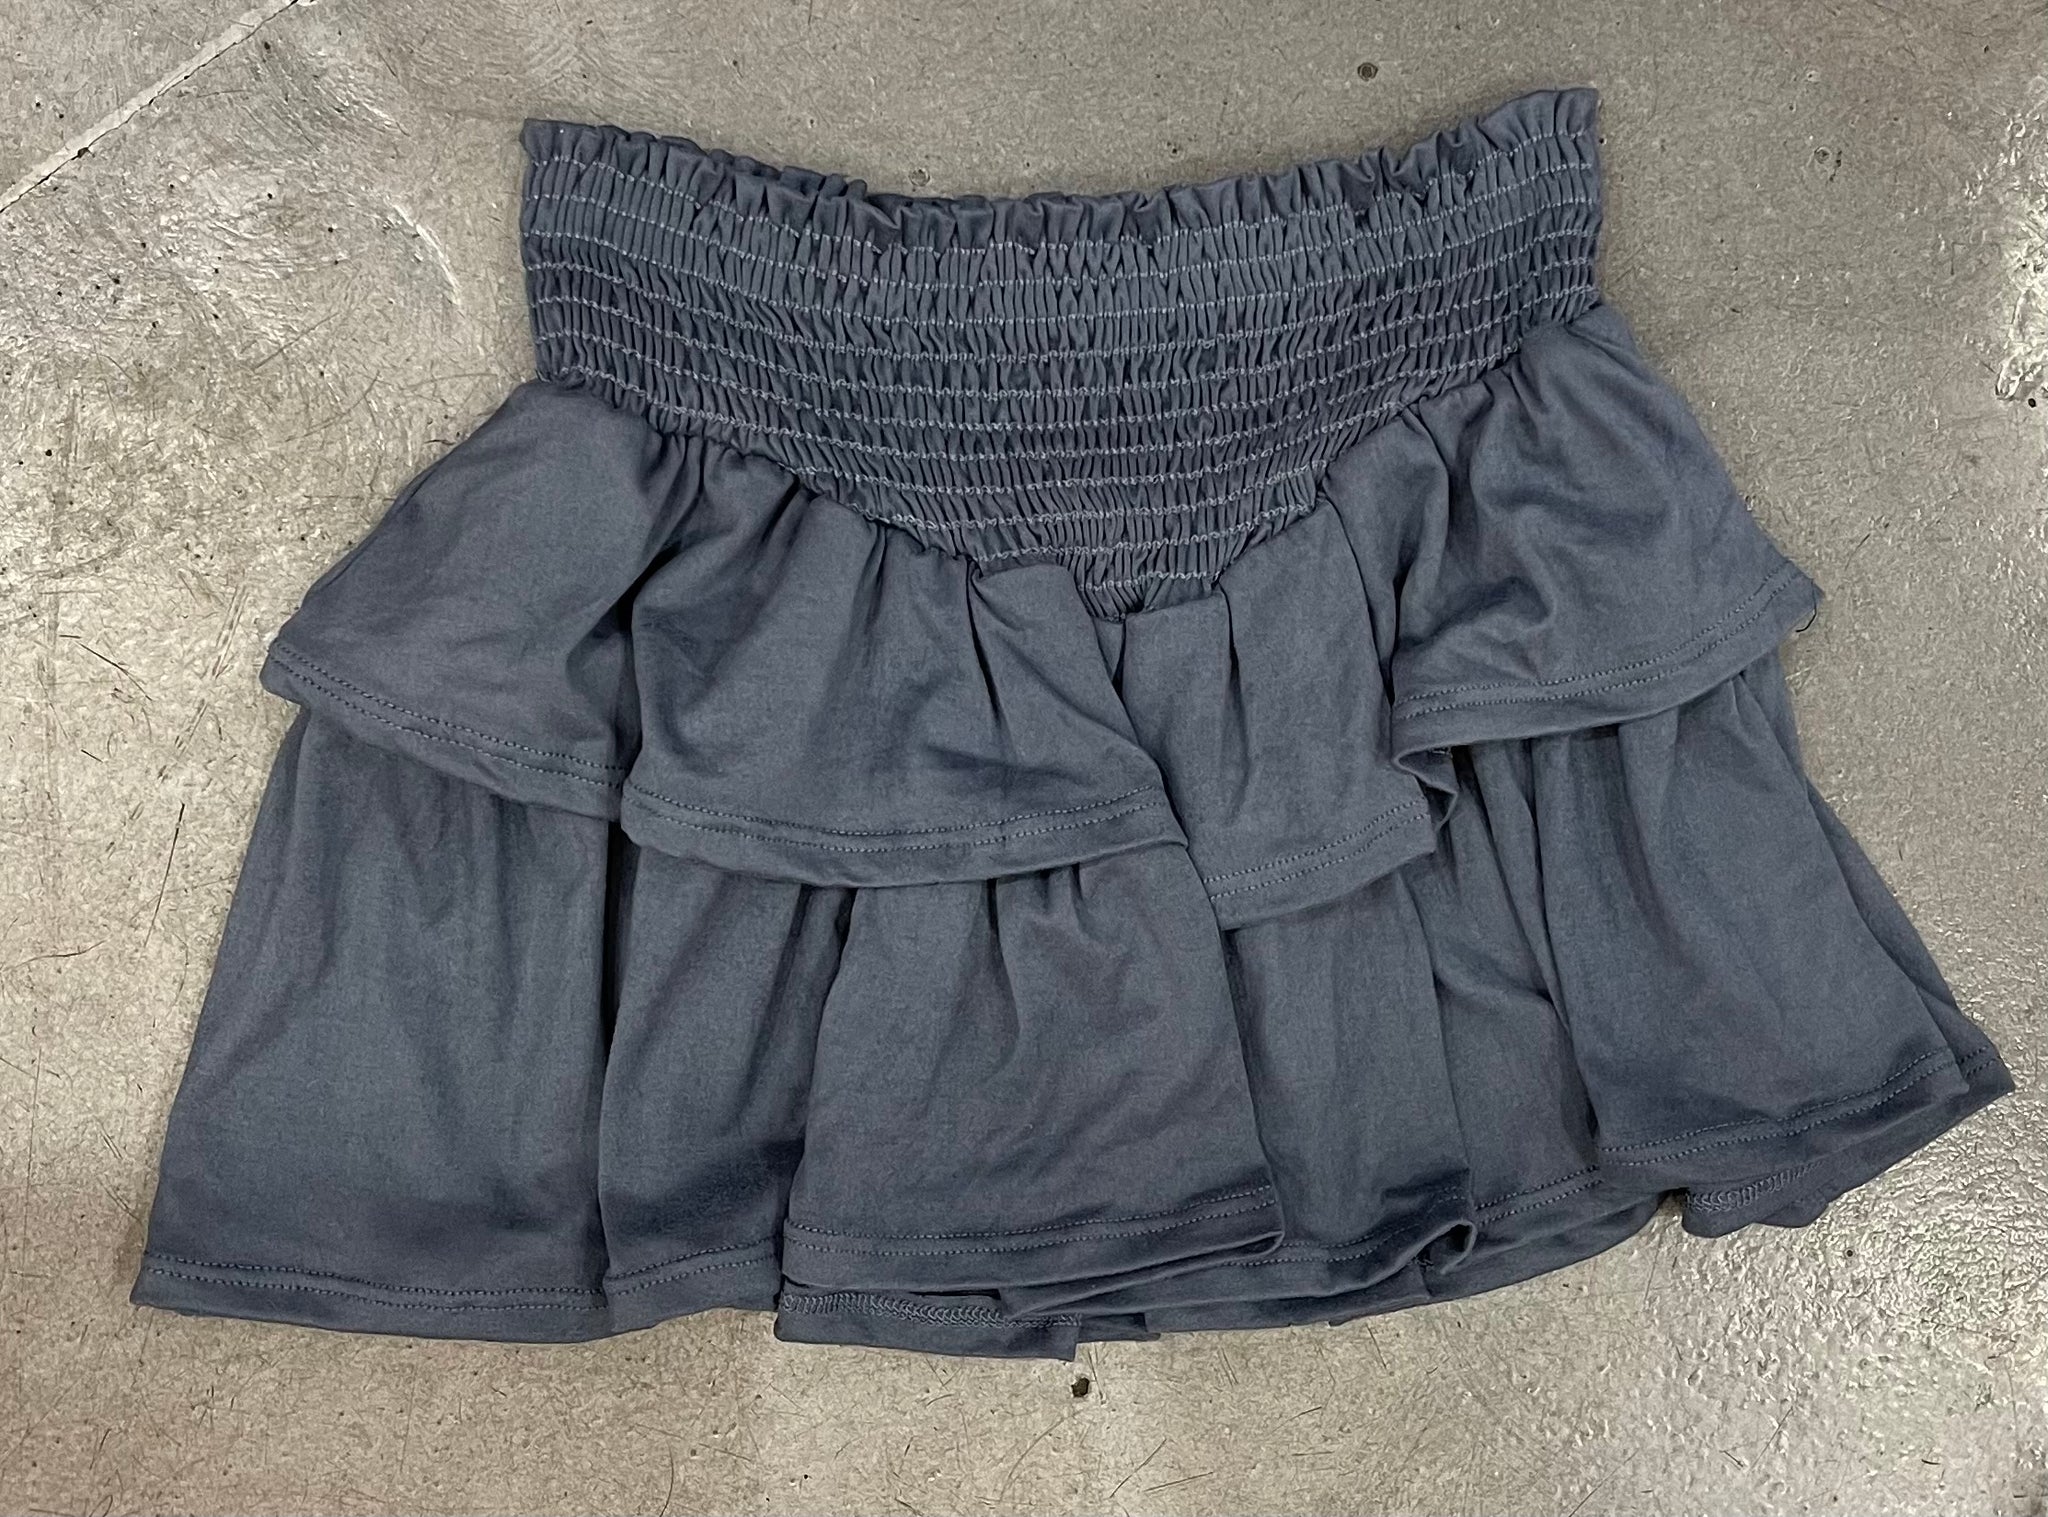 Tweenstyle - Solid Grey Smocked Skirt